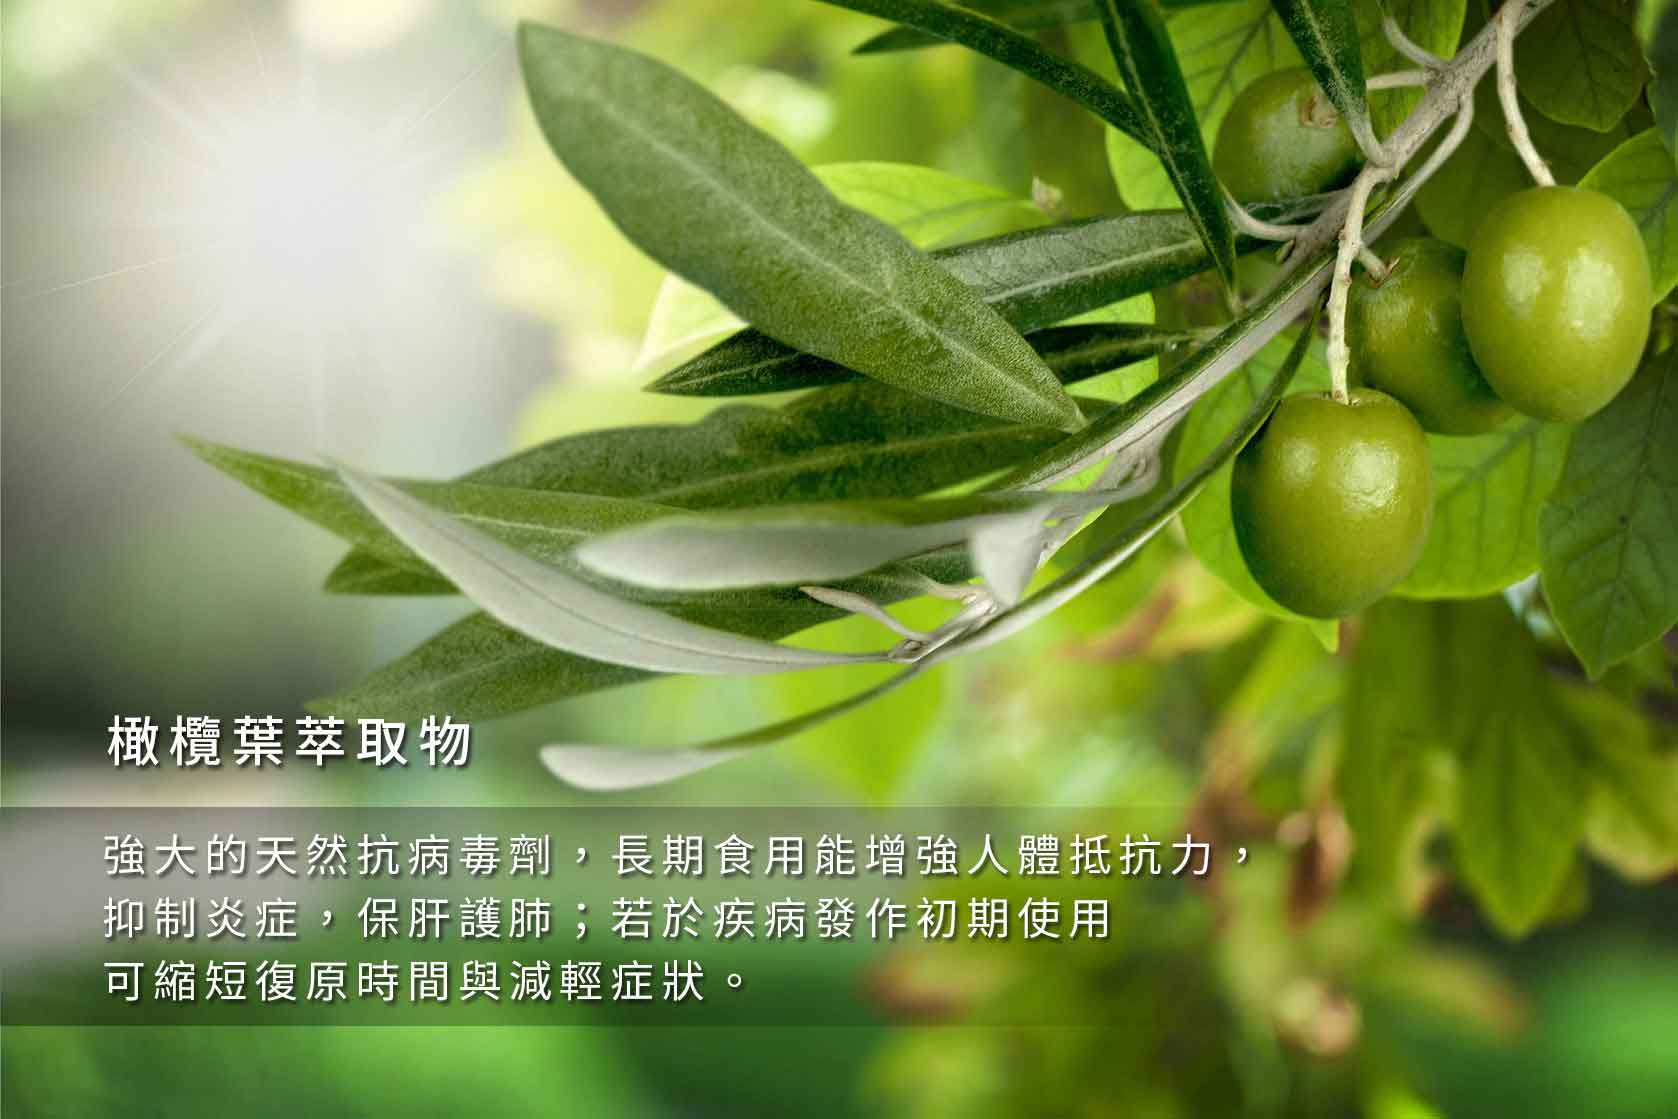 『讚恩』九種萃取物-橄欖葉萃取物(Olive Extract)